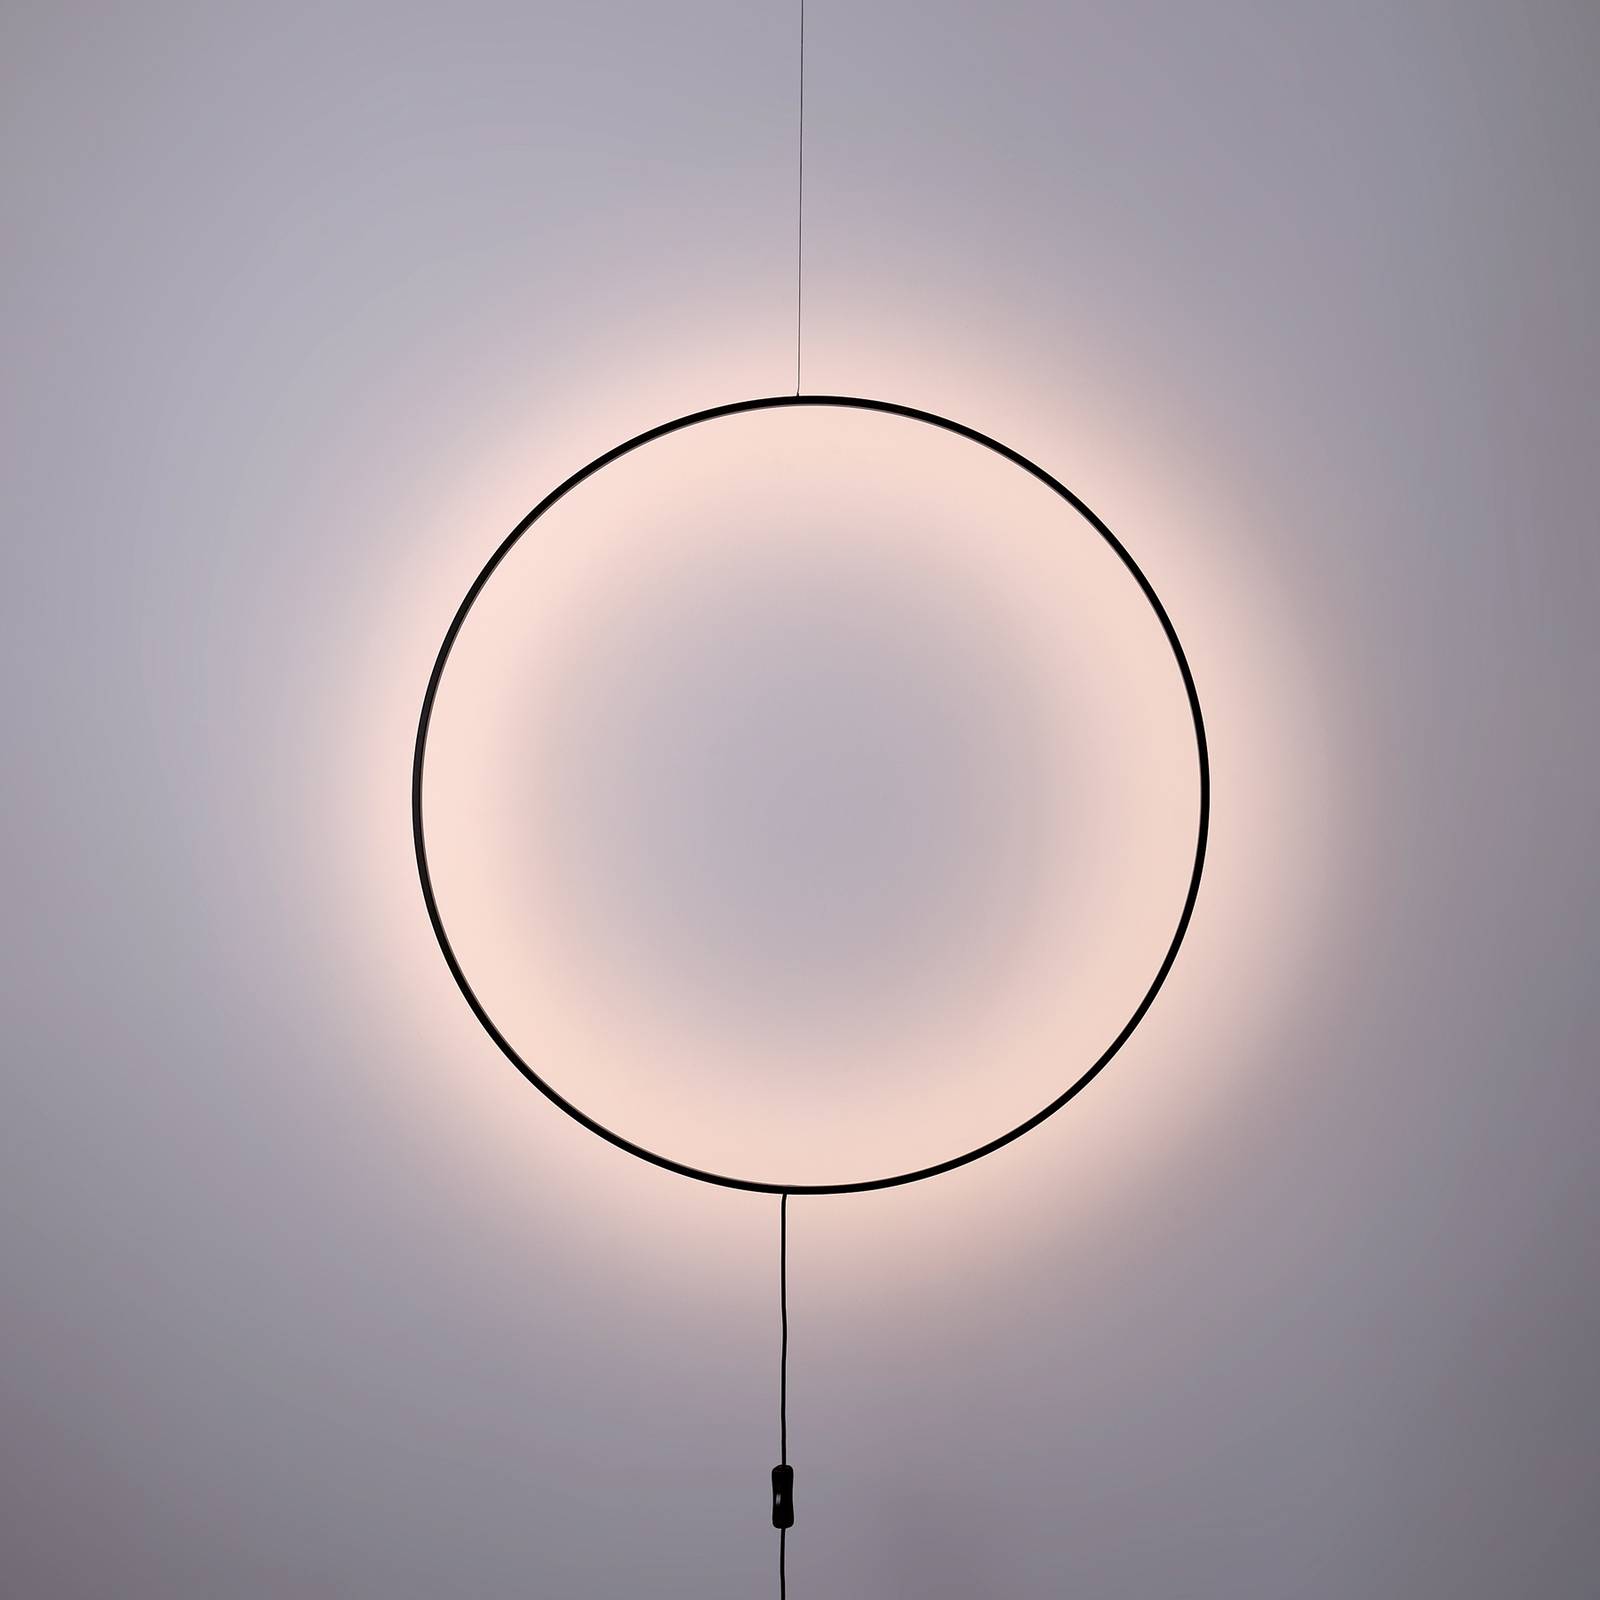 Viokef LED nástěnné světlo Shadow, kruhové, Ø 61 cm